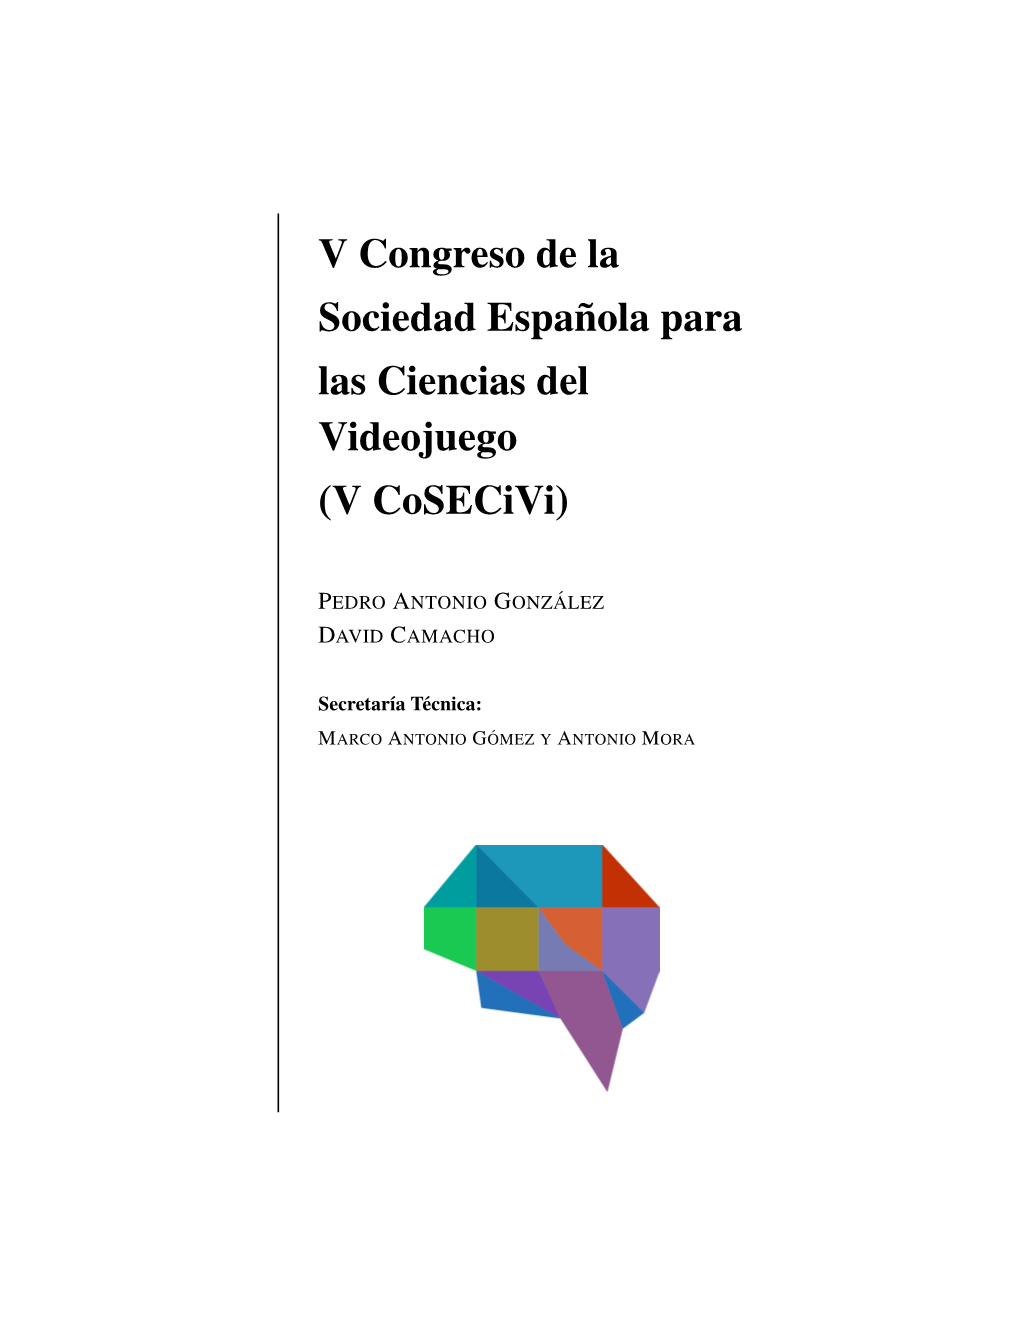 V Congreso De La Sociedad Española Para Las Ciencias Del Videojuego (V Cosecivi)